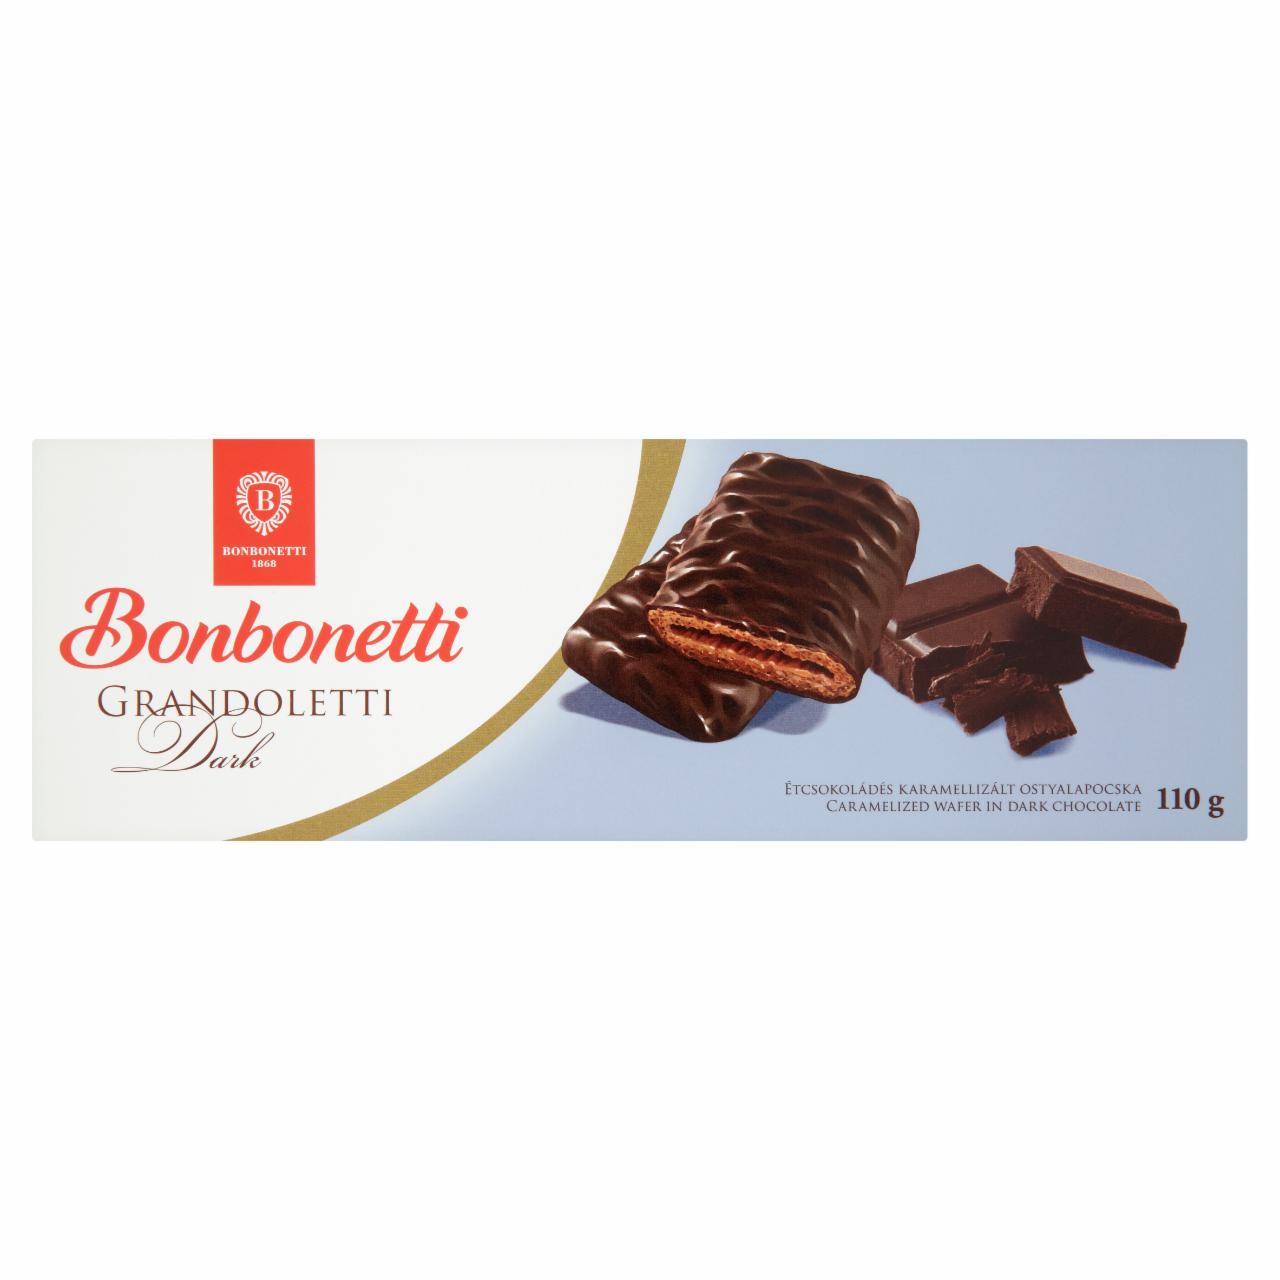 Képek - Bonbonetti Grandoletti étcsokoládés karamellizált ostyalapocska 110 g